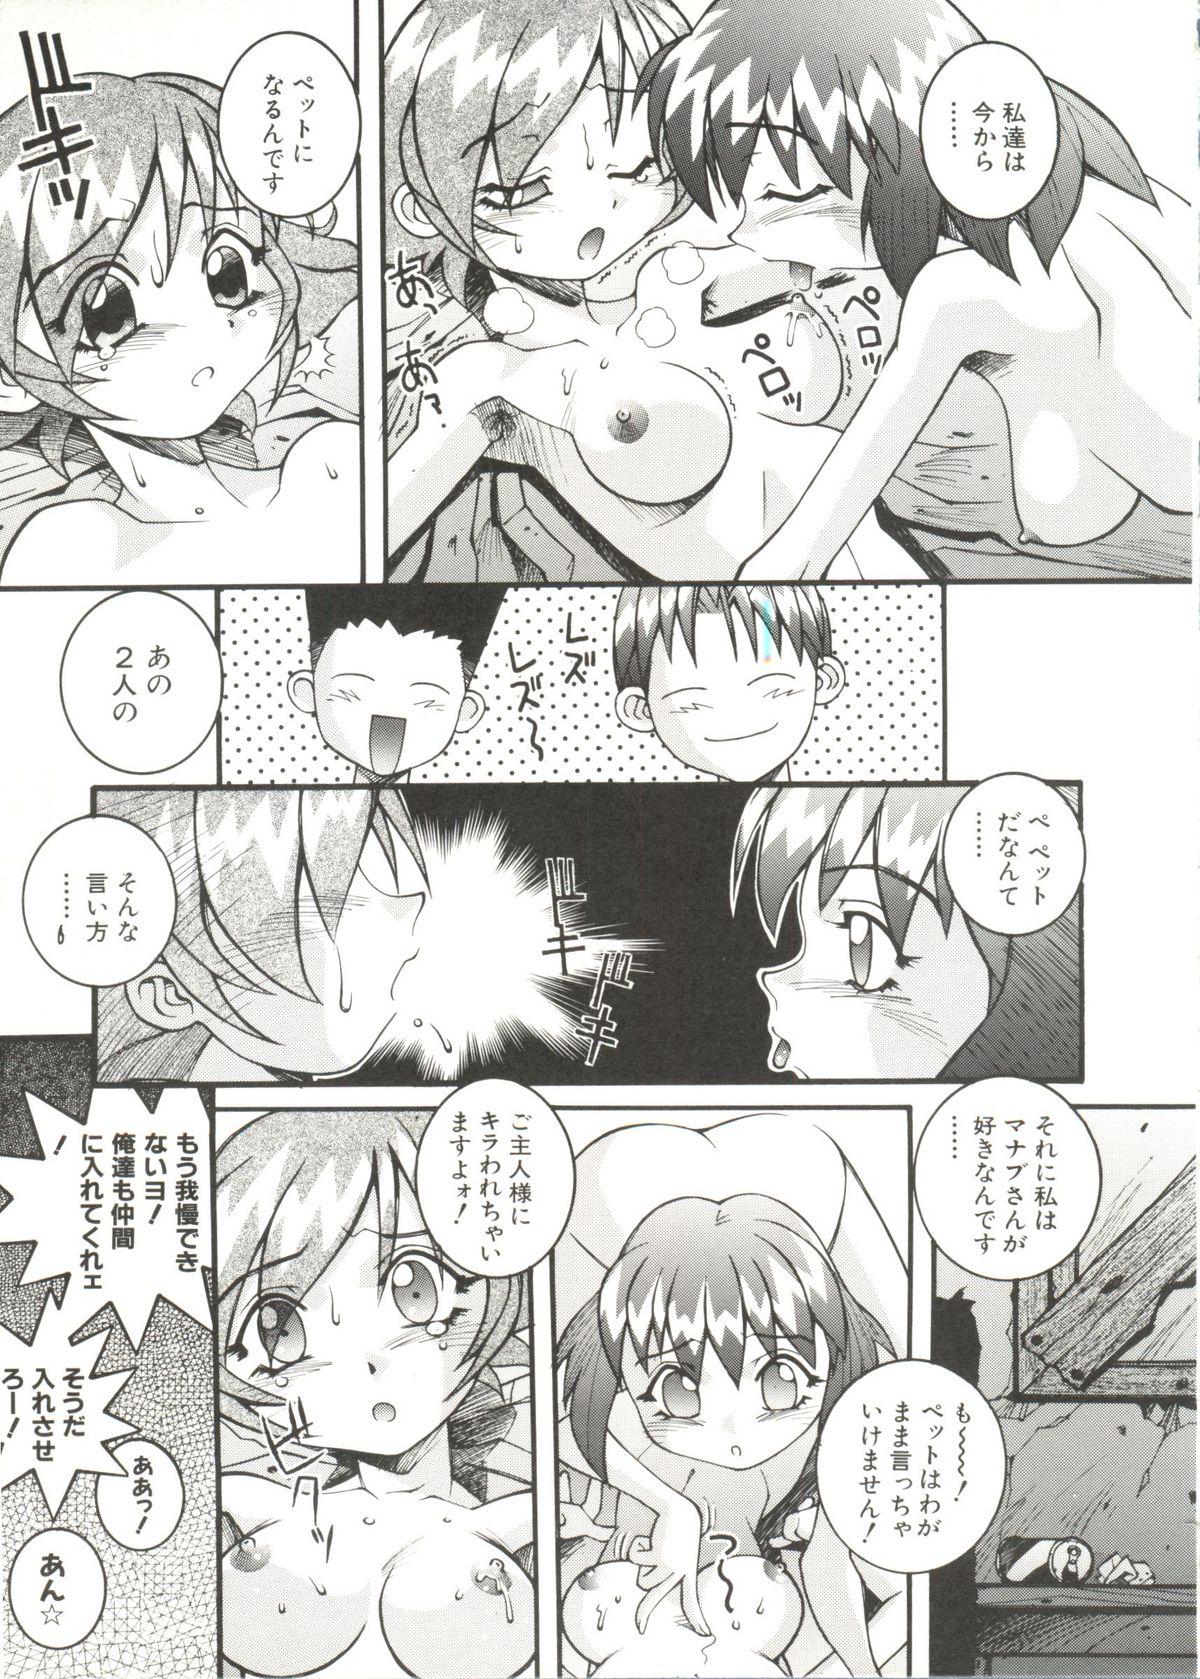 Denei Tamate Bako Bishoujo Doujinshi Anthology Vol. 2 - Nishinhou no Tenshi 96